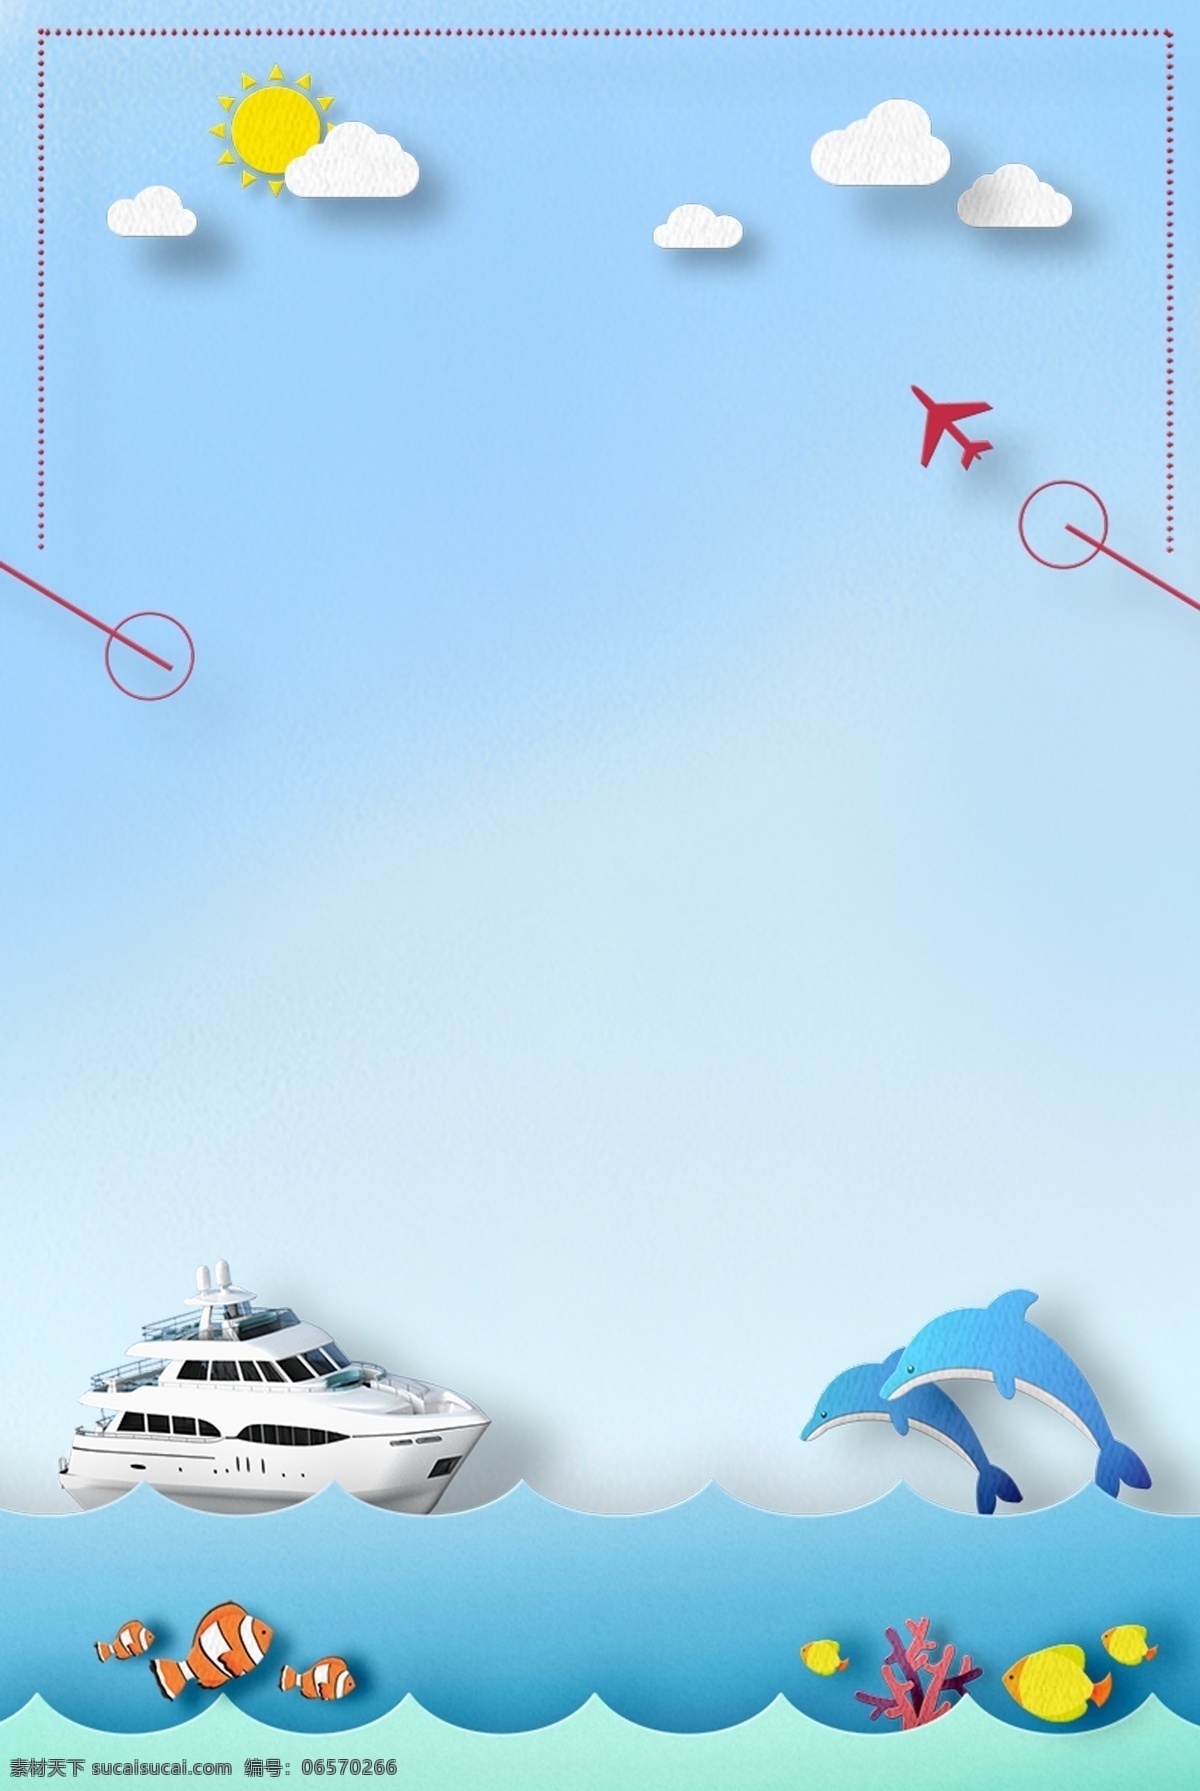 夏季 旅游 蓝色 清新 简约 海报 游艇 海豚 蓝天 白云 线条 边框 飞机